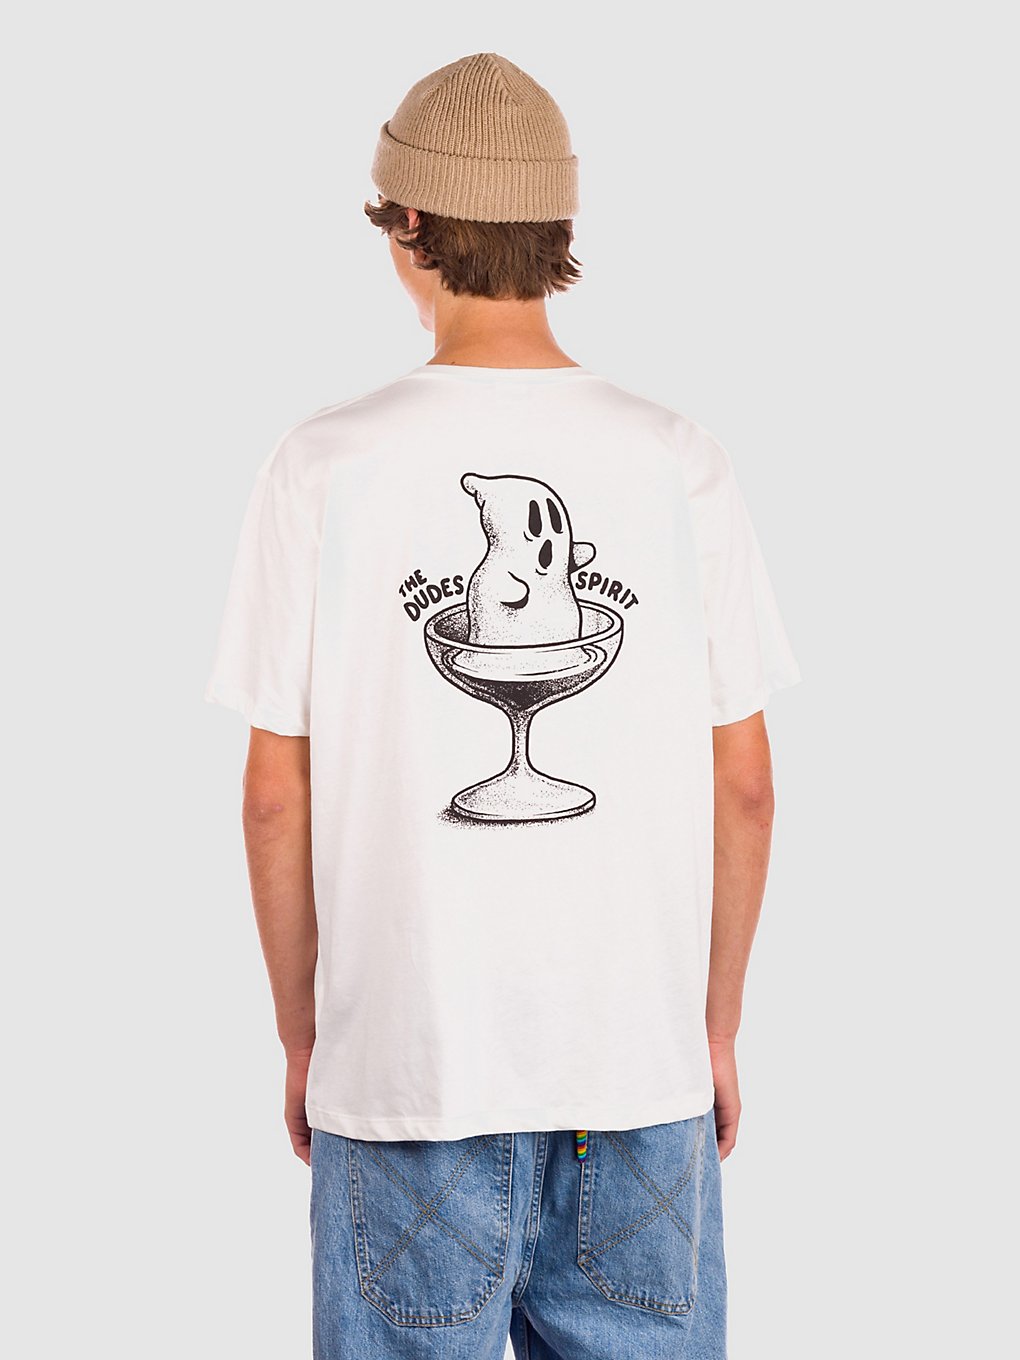 The Dudes Spirit T-Shirt white kaufen